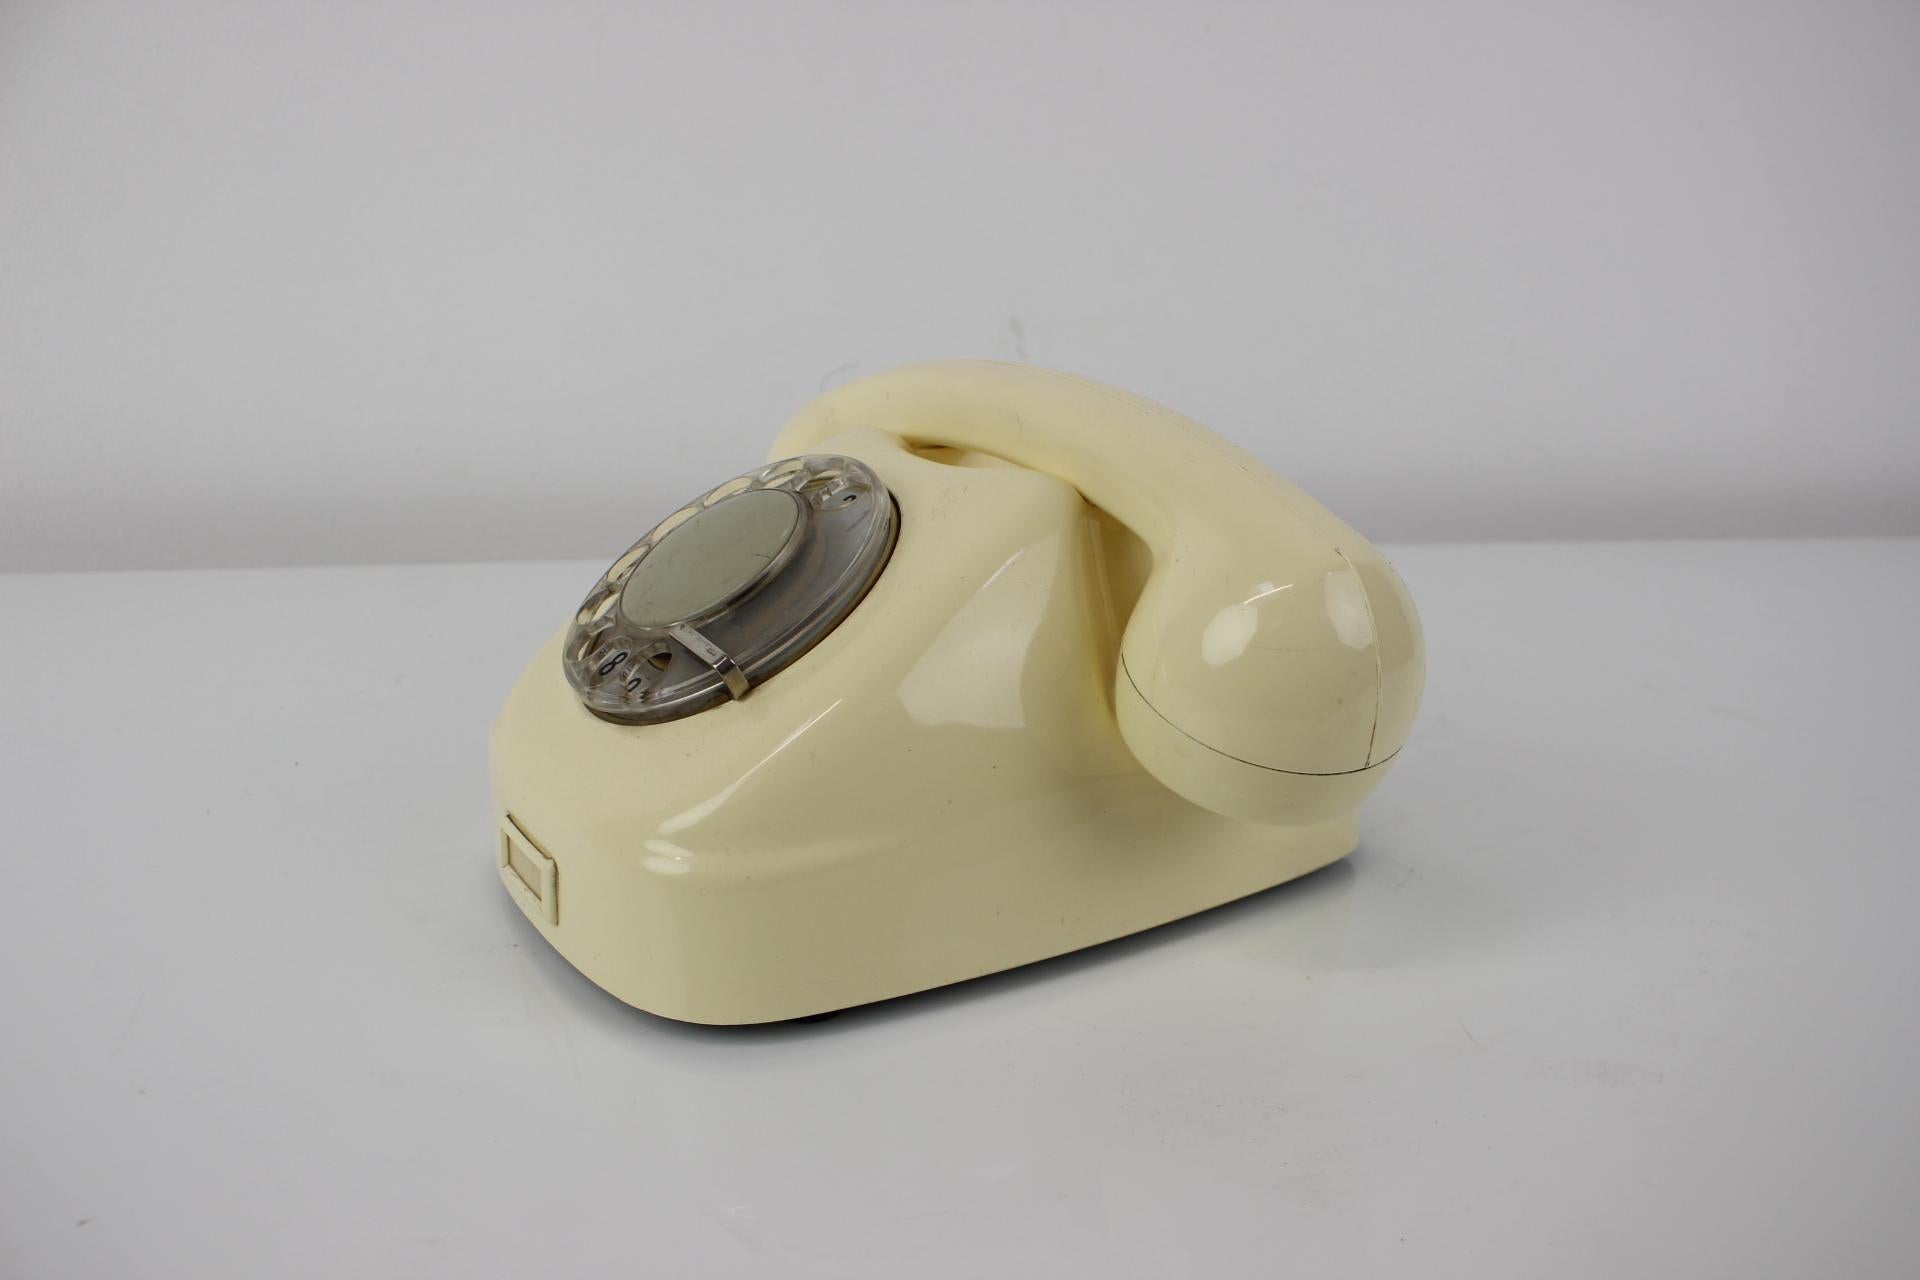 Czech Mid-Century Functional Tesla Phone 1968, Československo For Sale